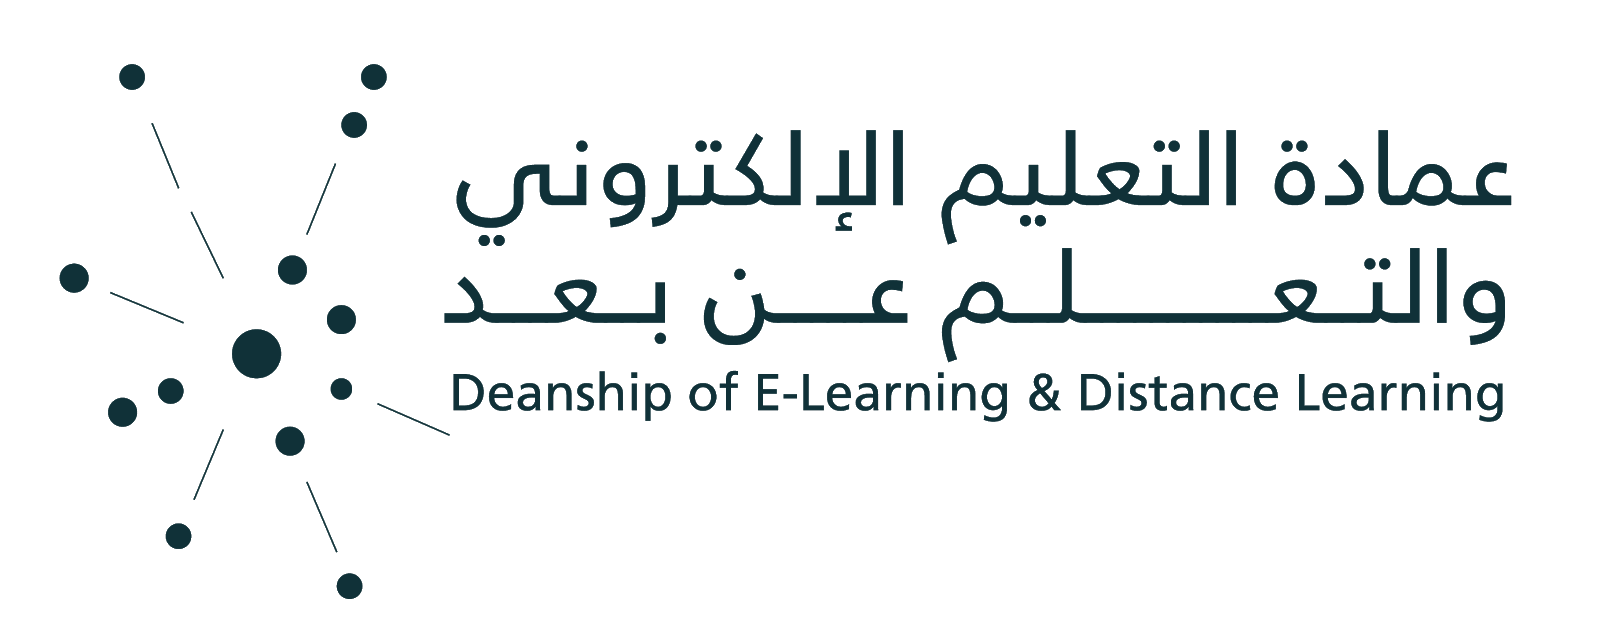 Deanship logo.png